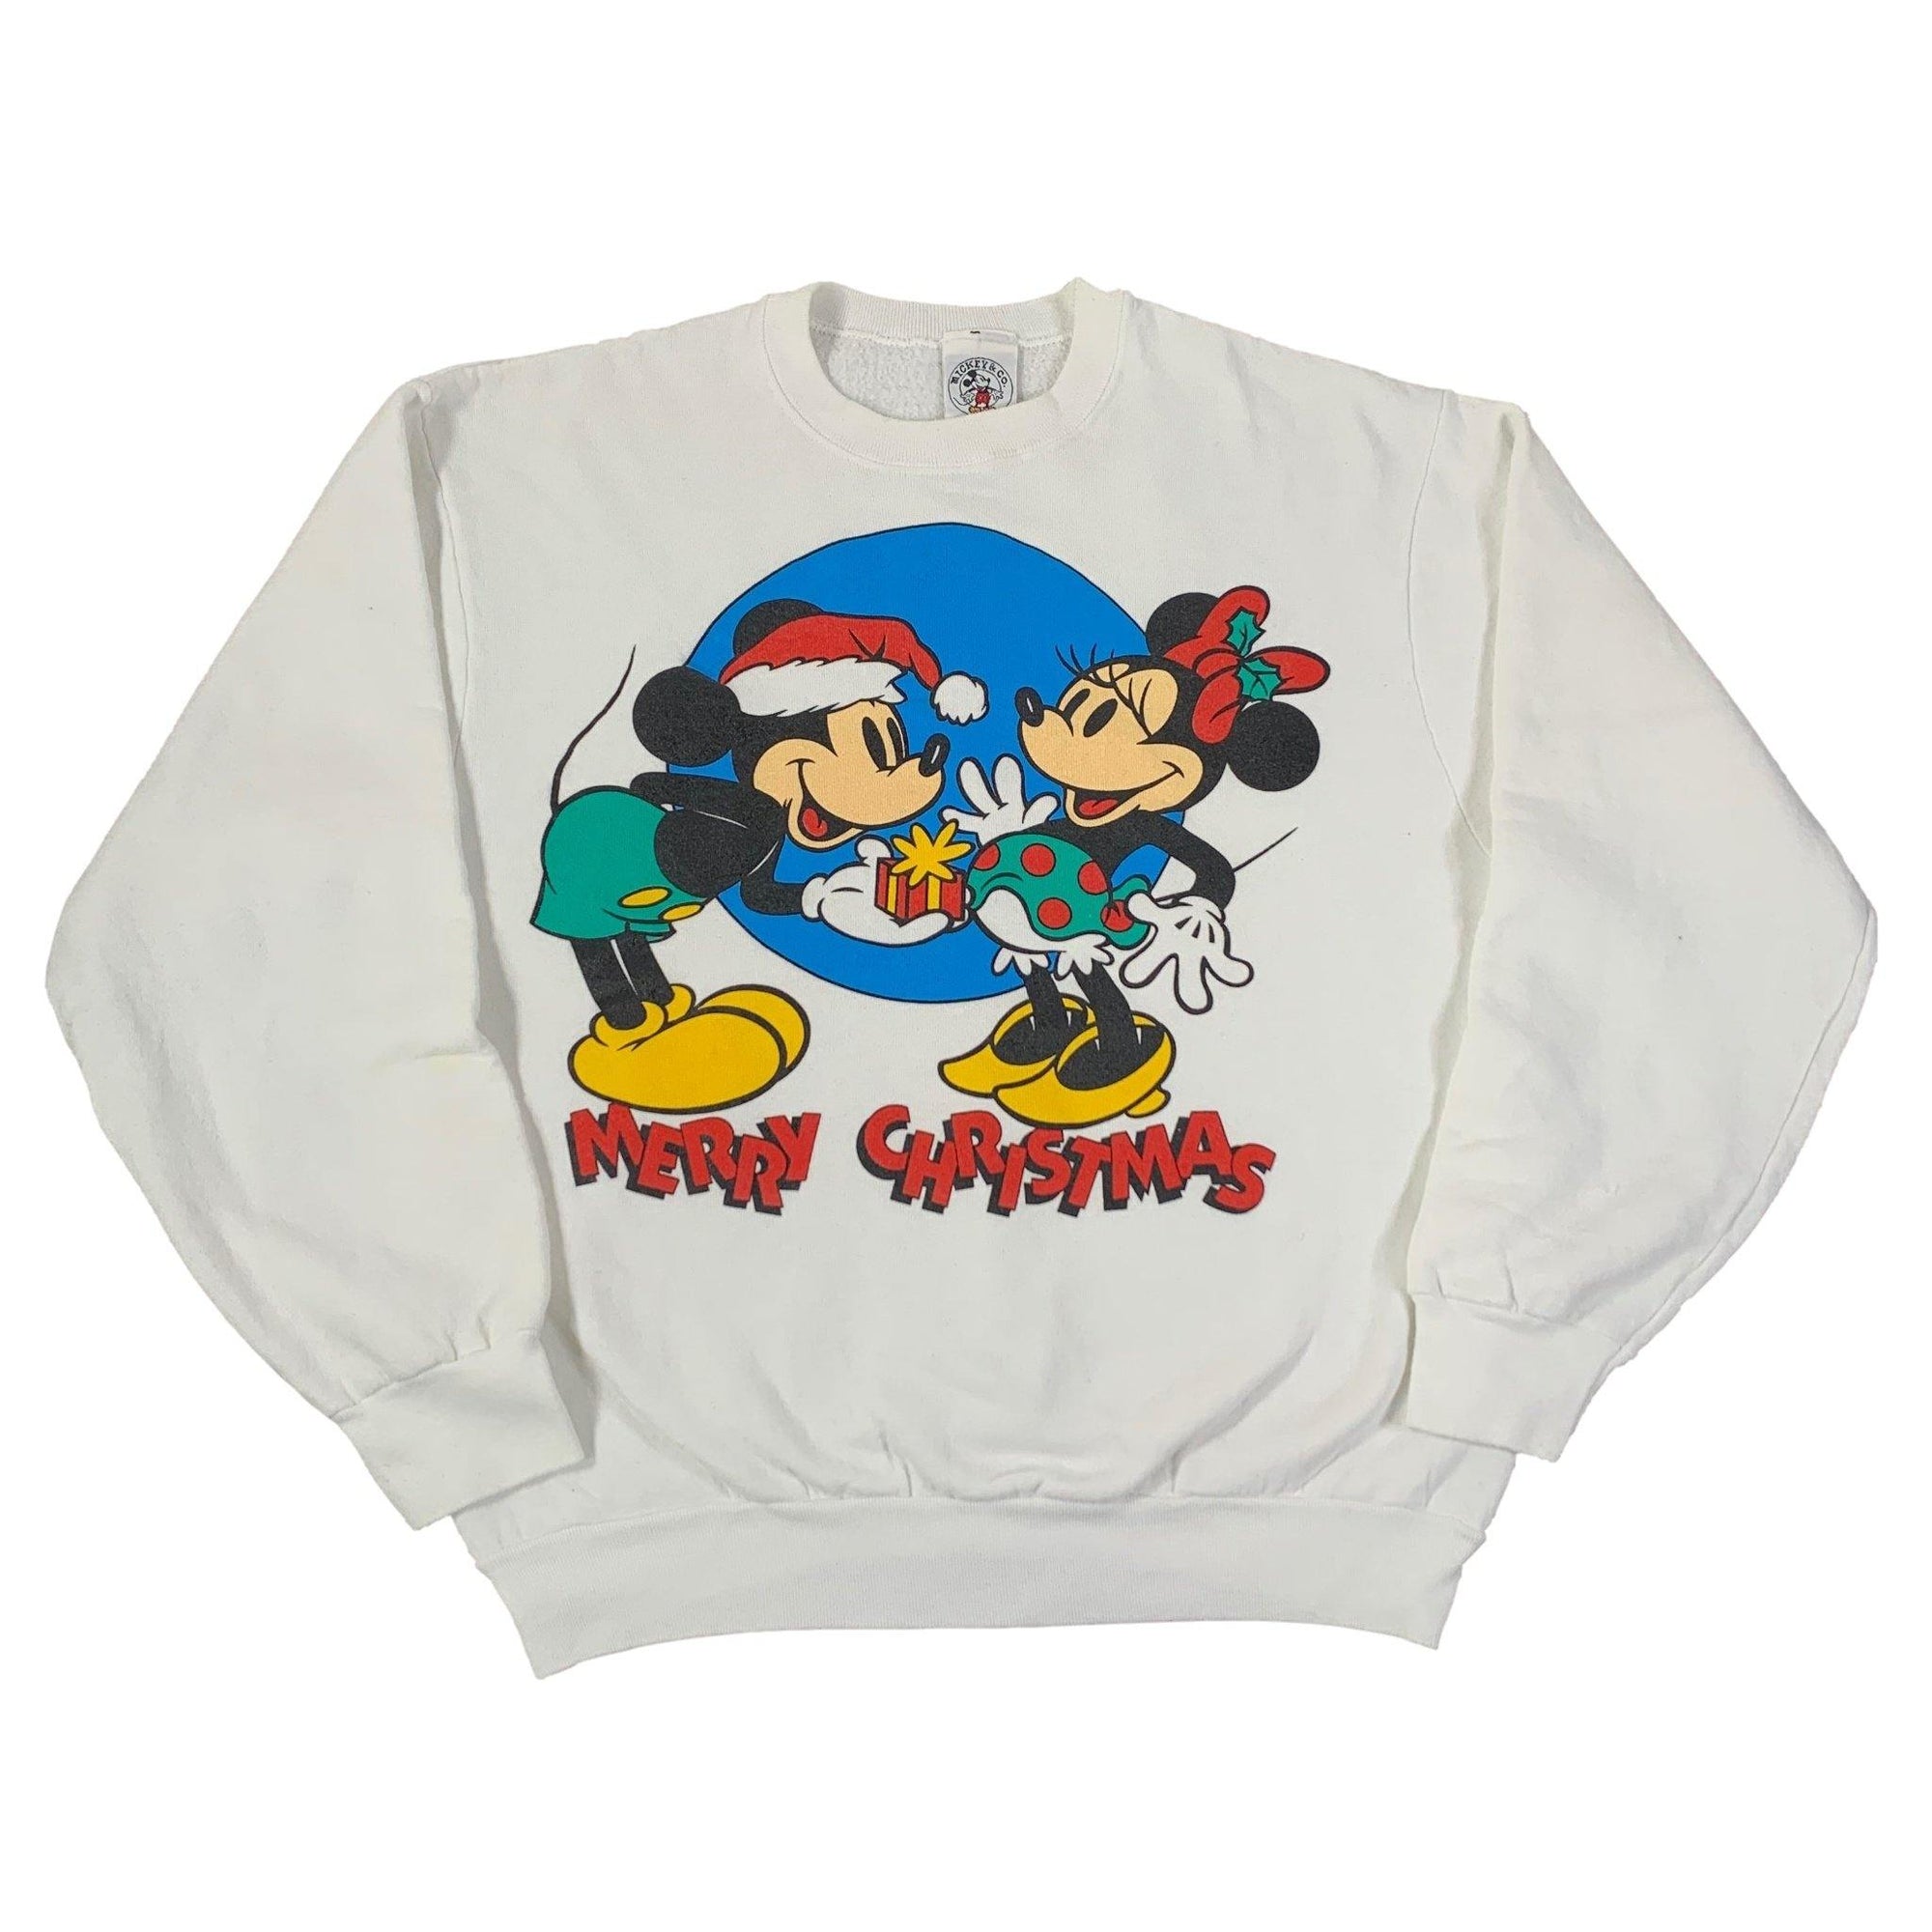 Vintage Mickey Mouse "Merry Christmas" Crewneck Sweatshirt - jointcustodydc